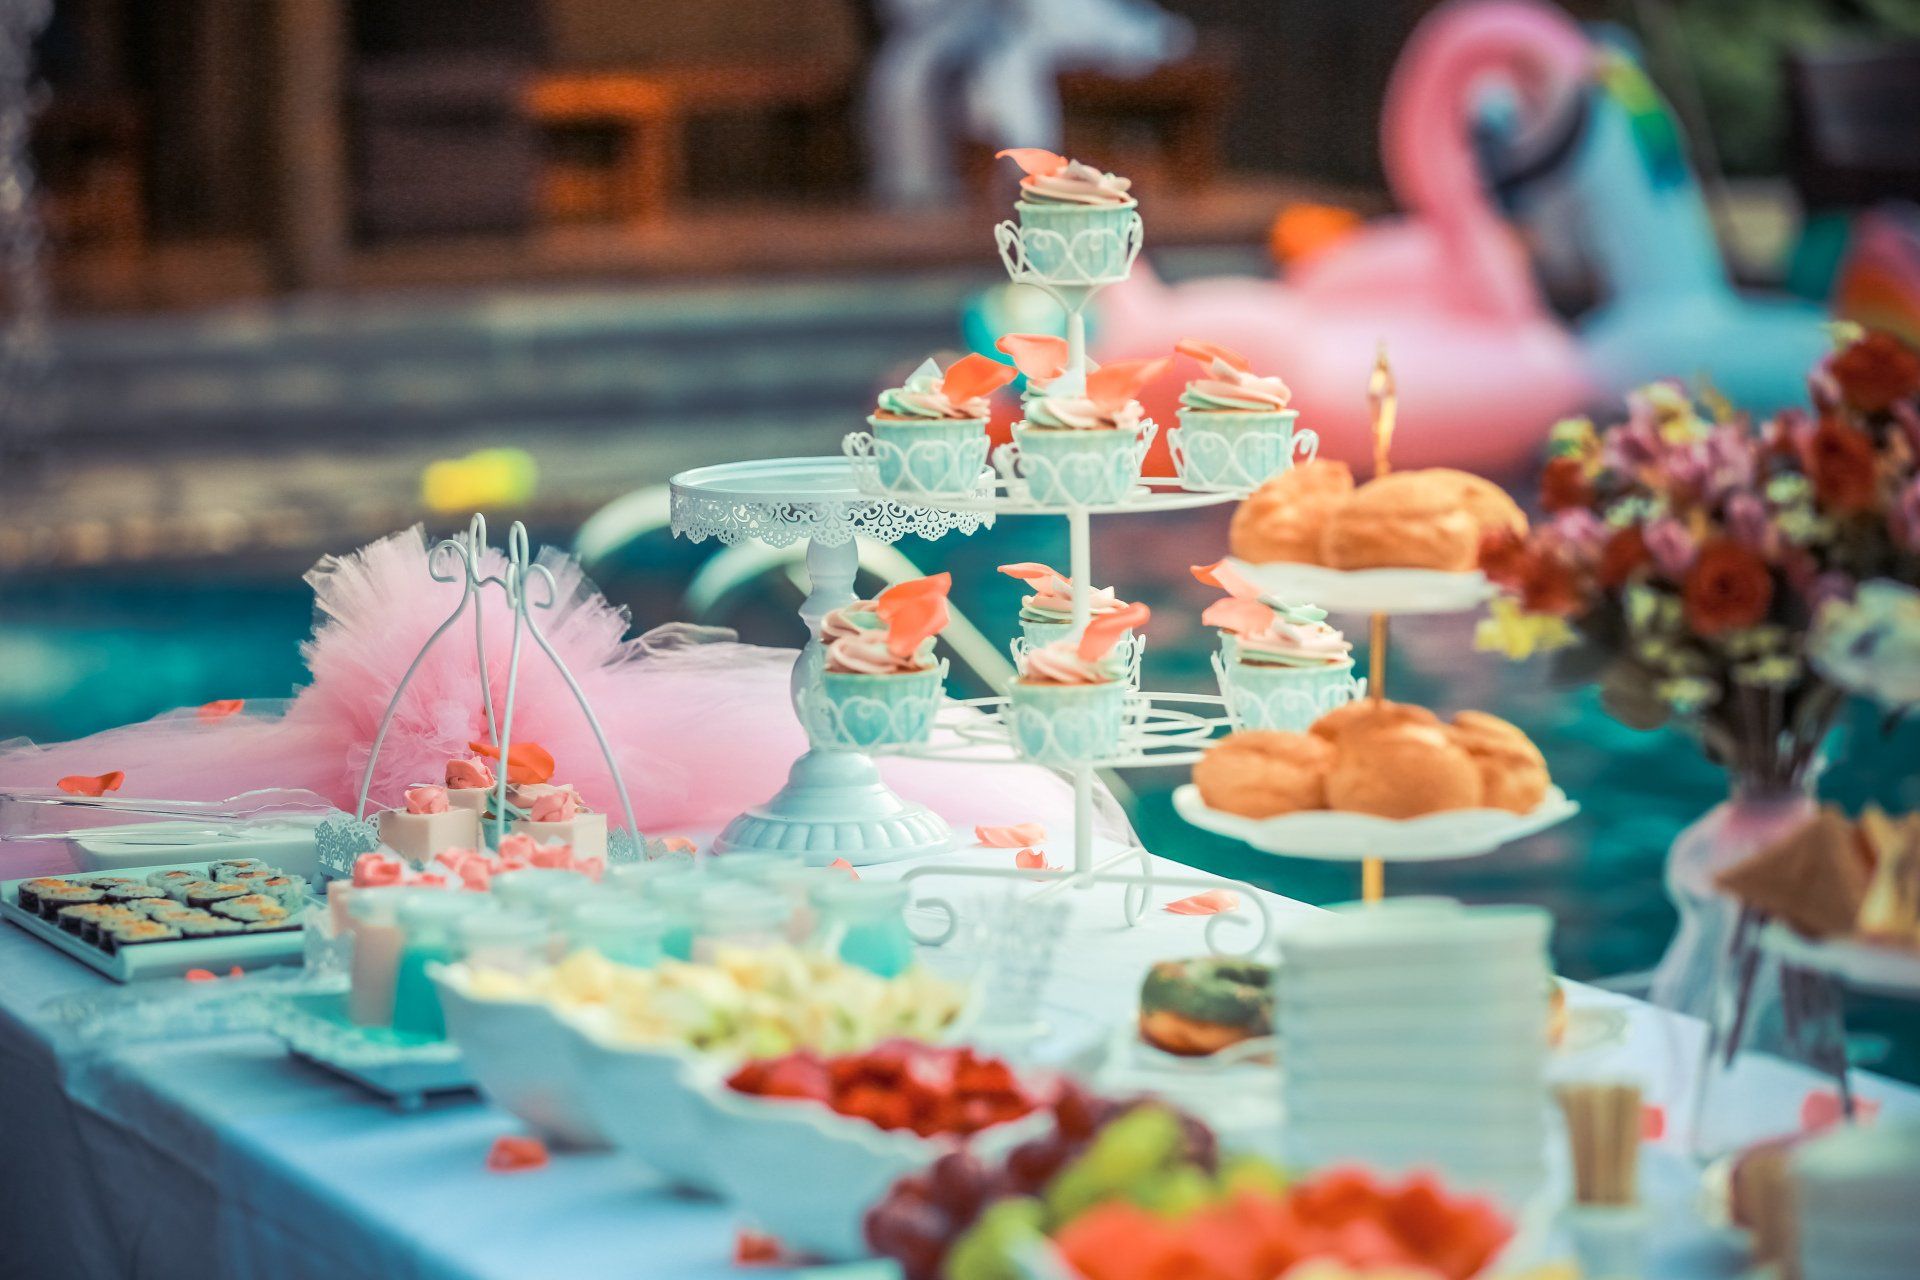 Pink Desserts - Dessert Stations - Vintage Ice Cream Van Hire - Wedding Desserts